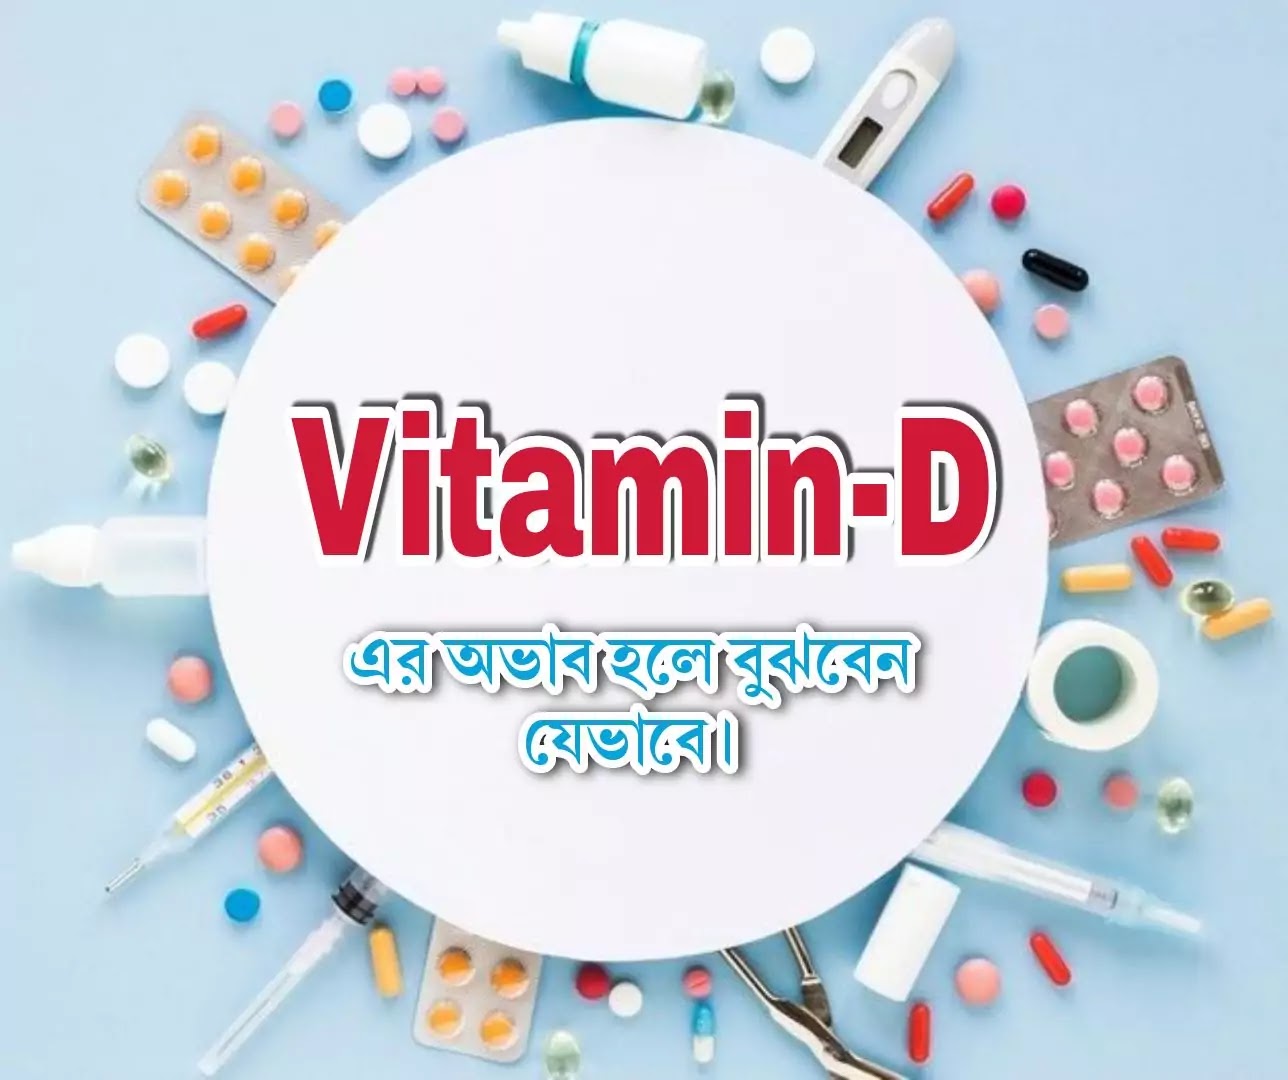 শরীরে ভিটামিন ডি-এর অভাব থাকলে কিভাবে বুঝবেন? vitamin d deficiency